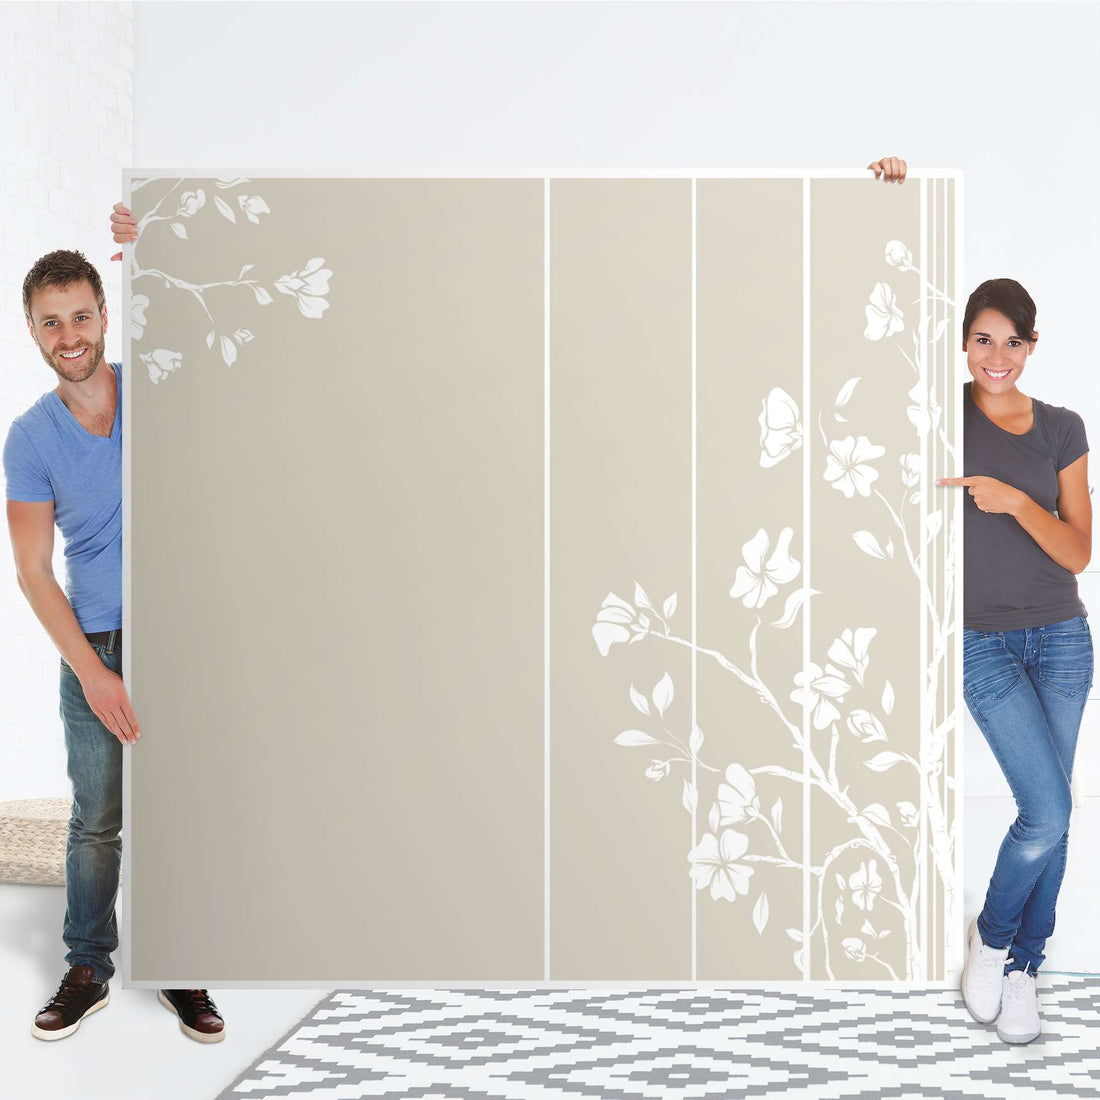 Möbel Klebefolie Florals Plain 3 - IKEA Pax Schrank 201 cm Höhe - Schiebetür - Folie